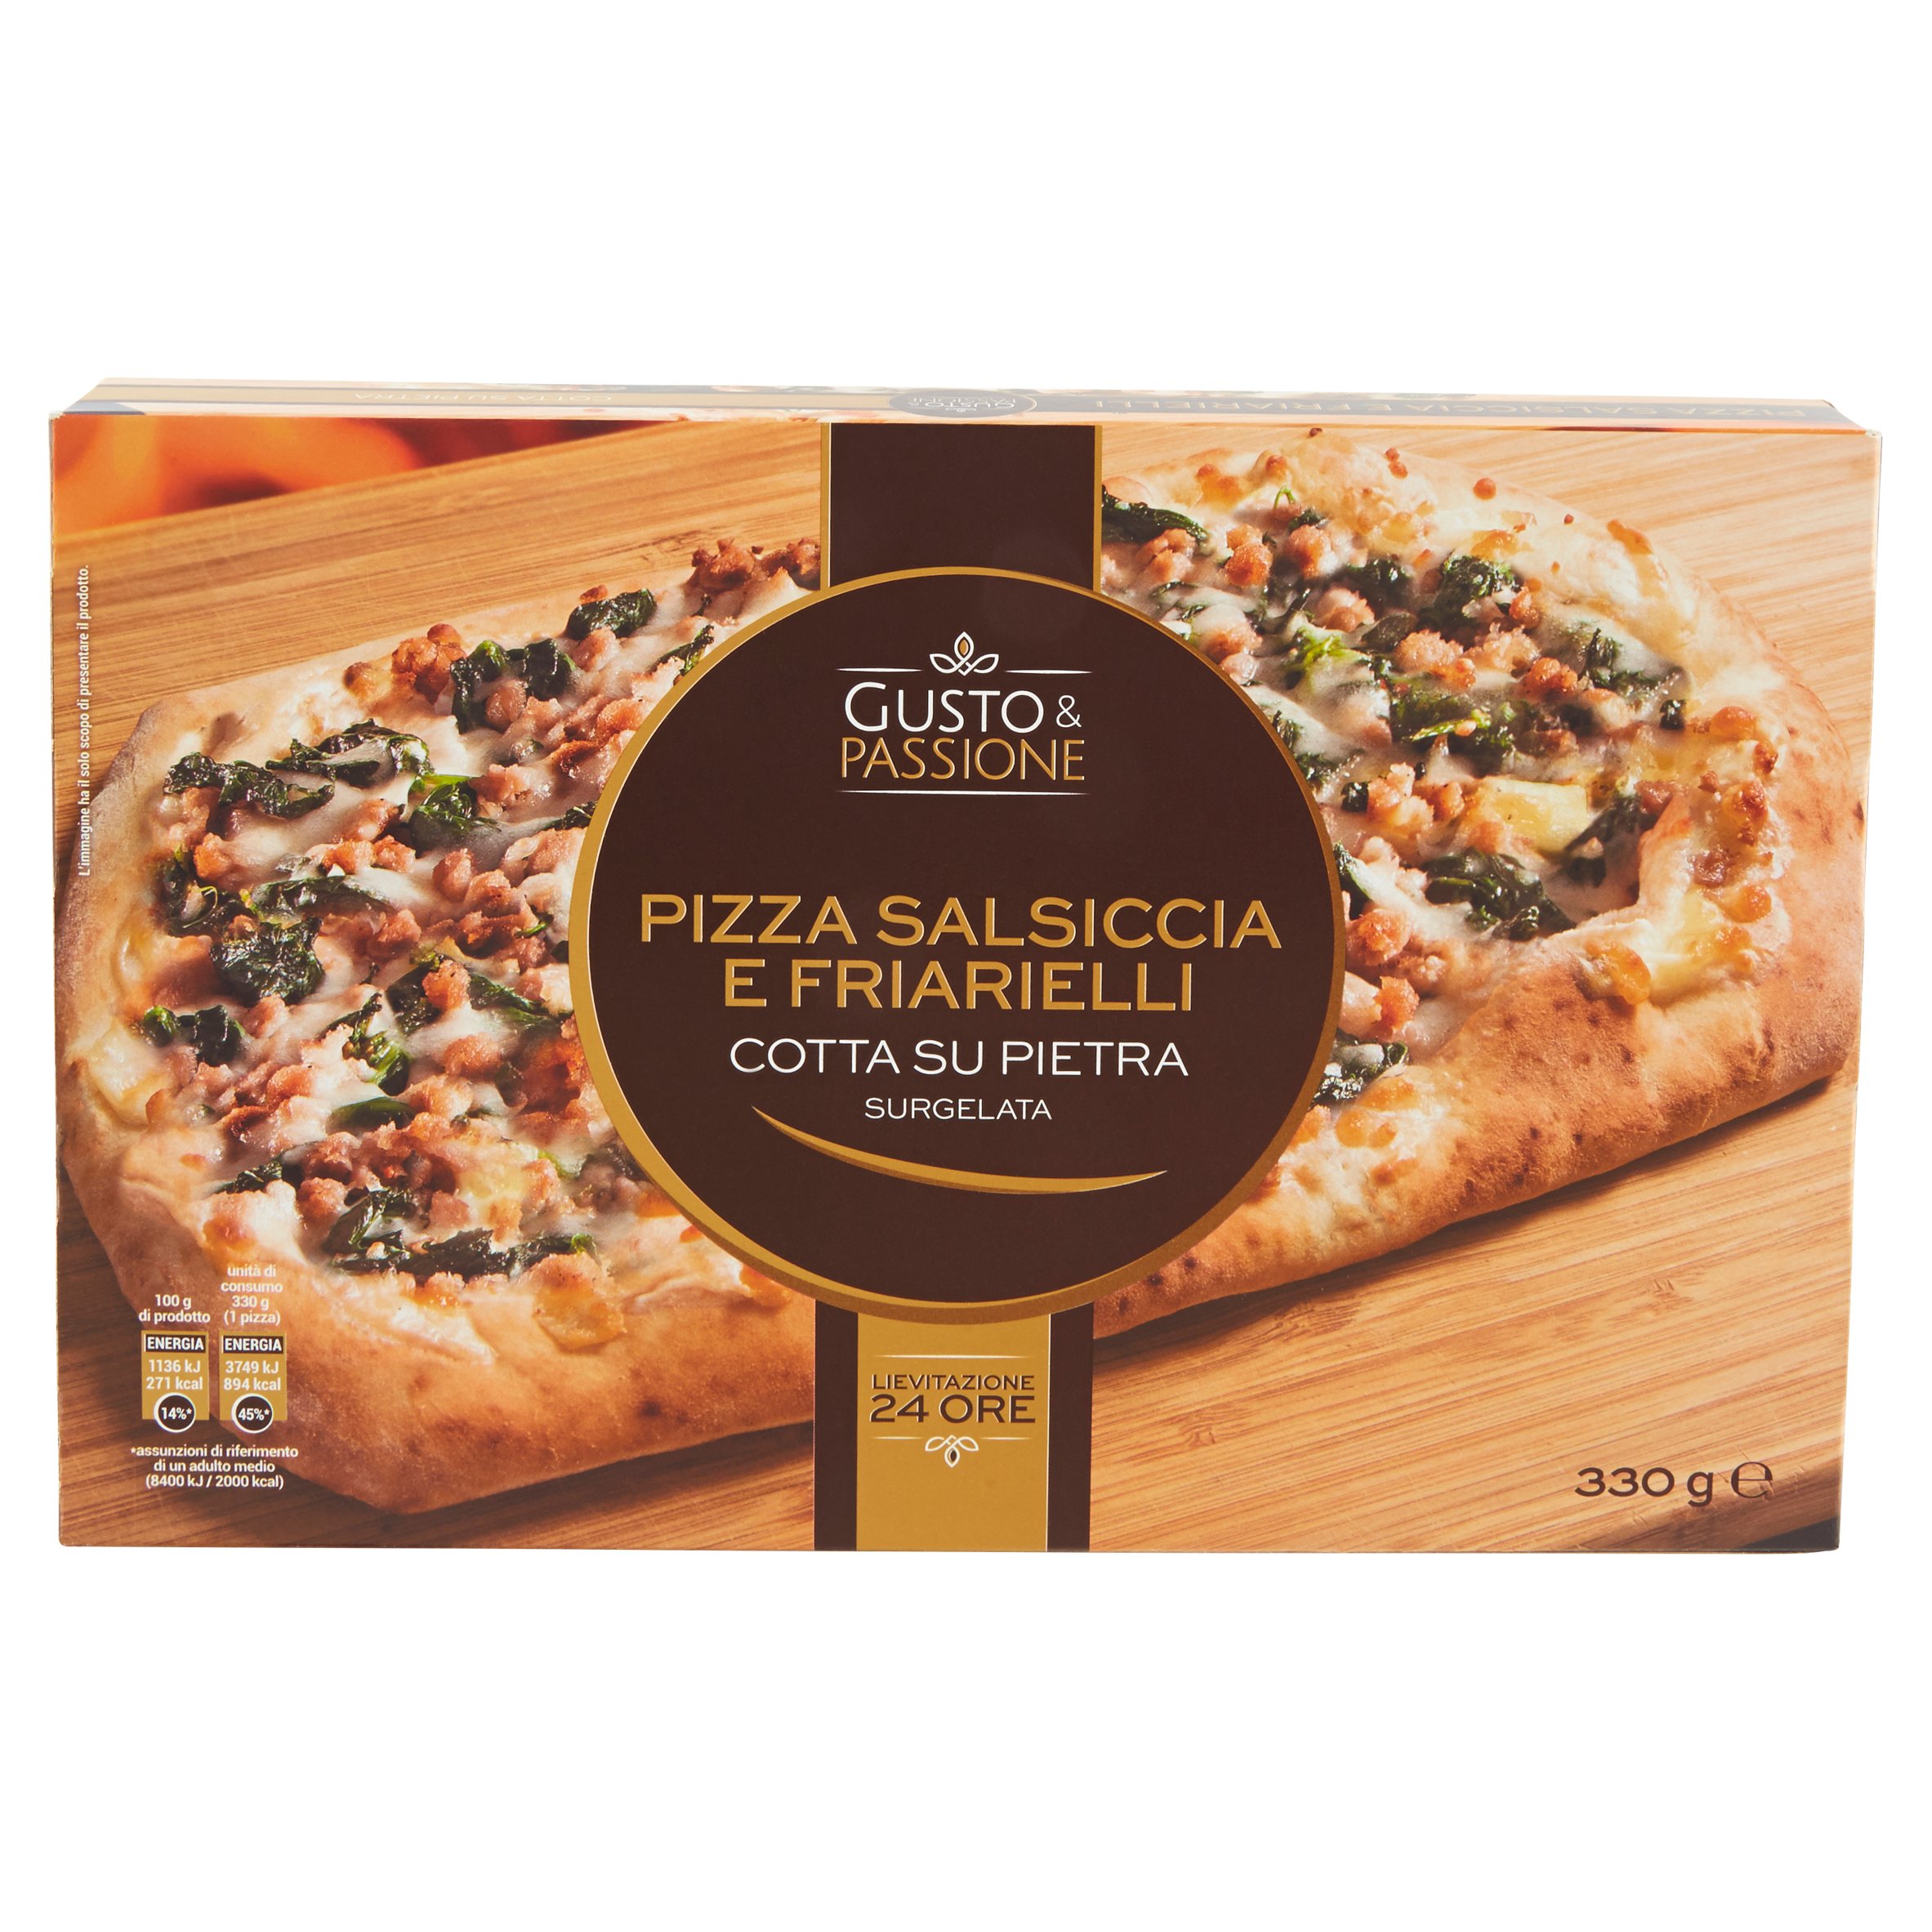 Gusto & Passione Pizza Salsiccia e Friarelli Surgelata 330 g - SuperSIGMA